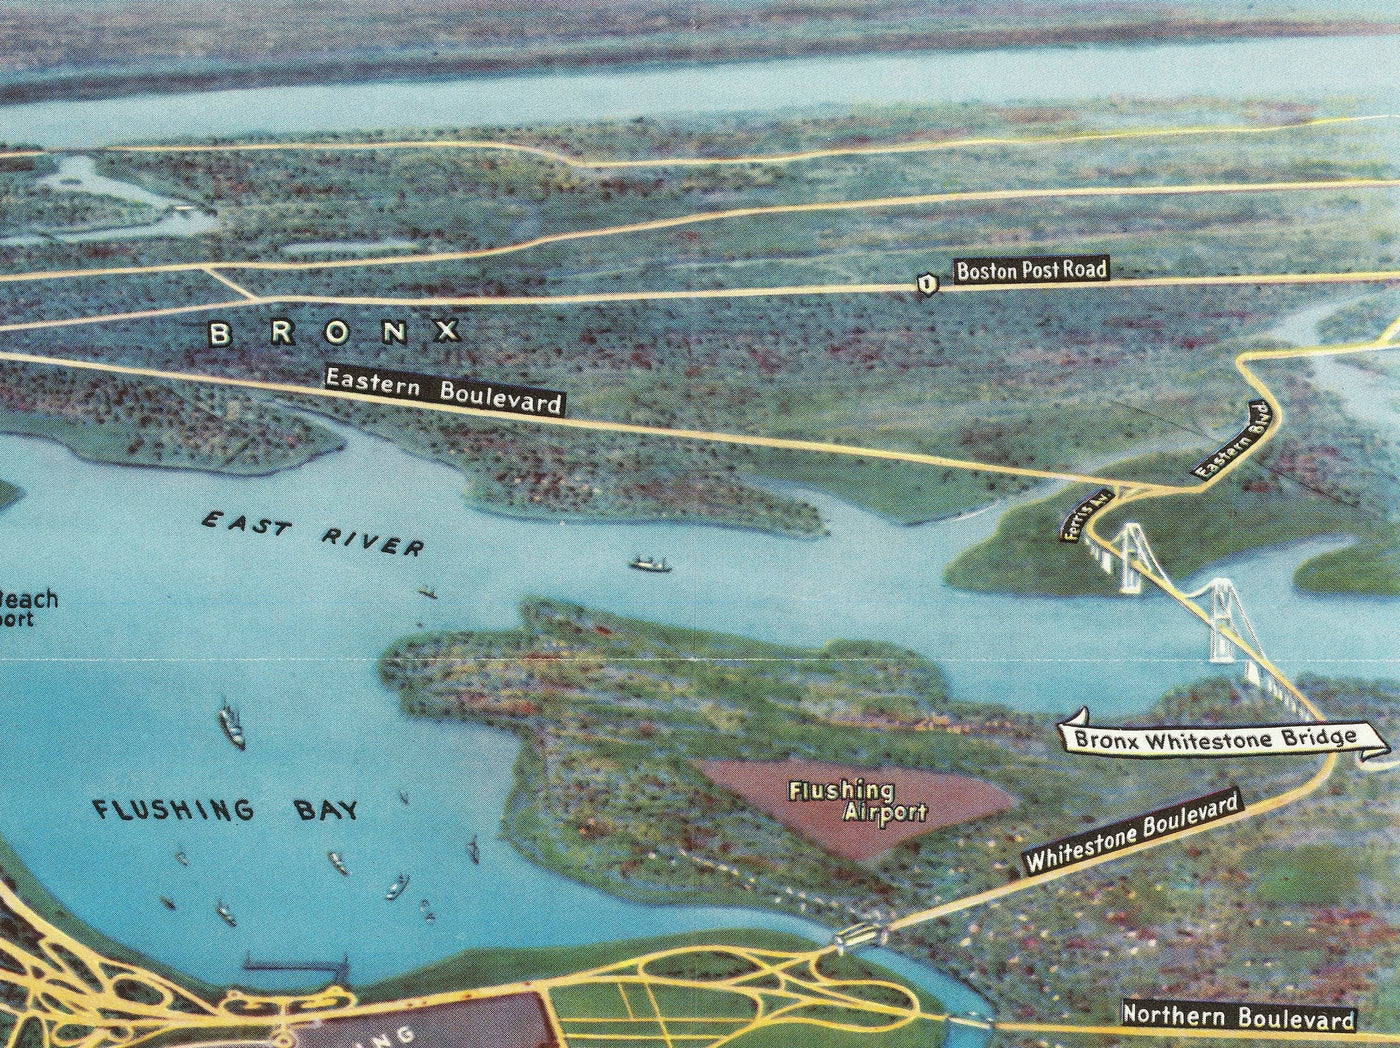 Exposition universelle de New York, 1939 par Spofford - Ancienne carte illustrée de Manhattan, New Jersey, métro, chemin de fer, Flushing Meadows